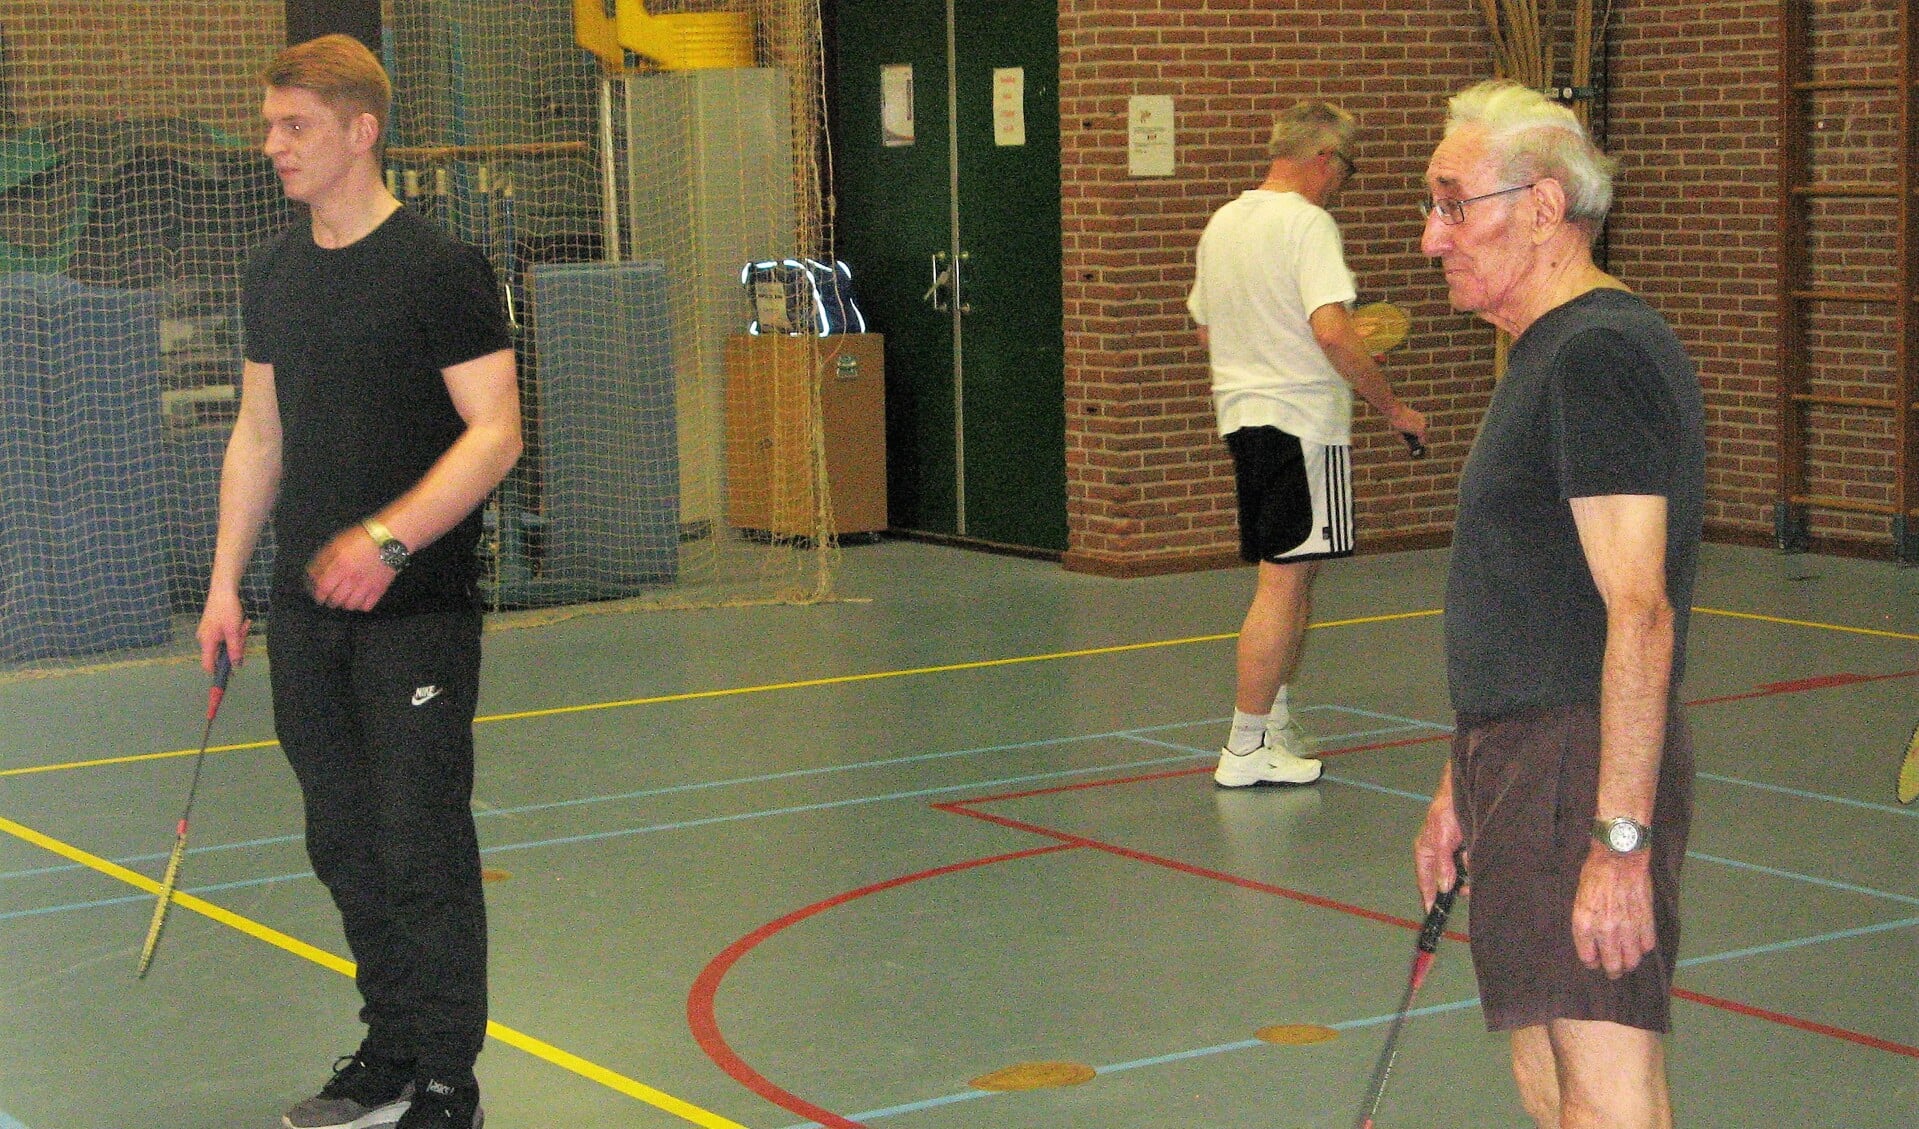 Kleinzoon (en sportleider) Robbert met Henk, zijn opa en deelnemer aan de groep. Foto: Bart Kraan 